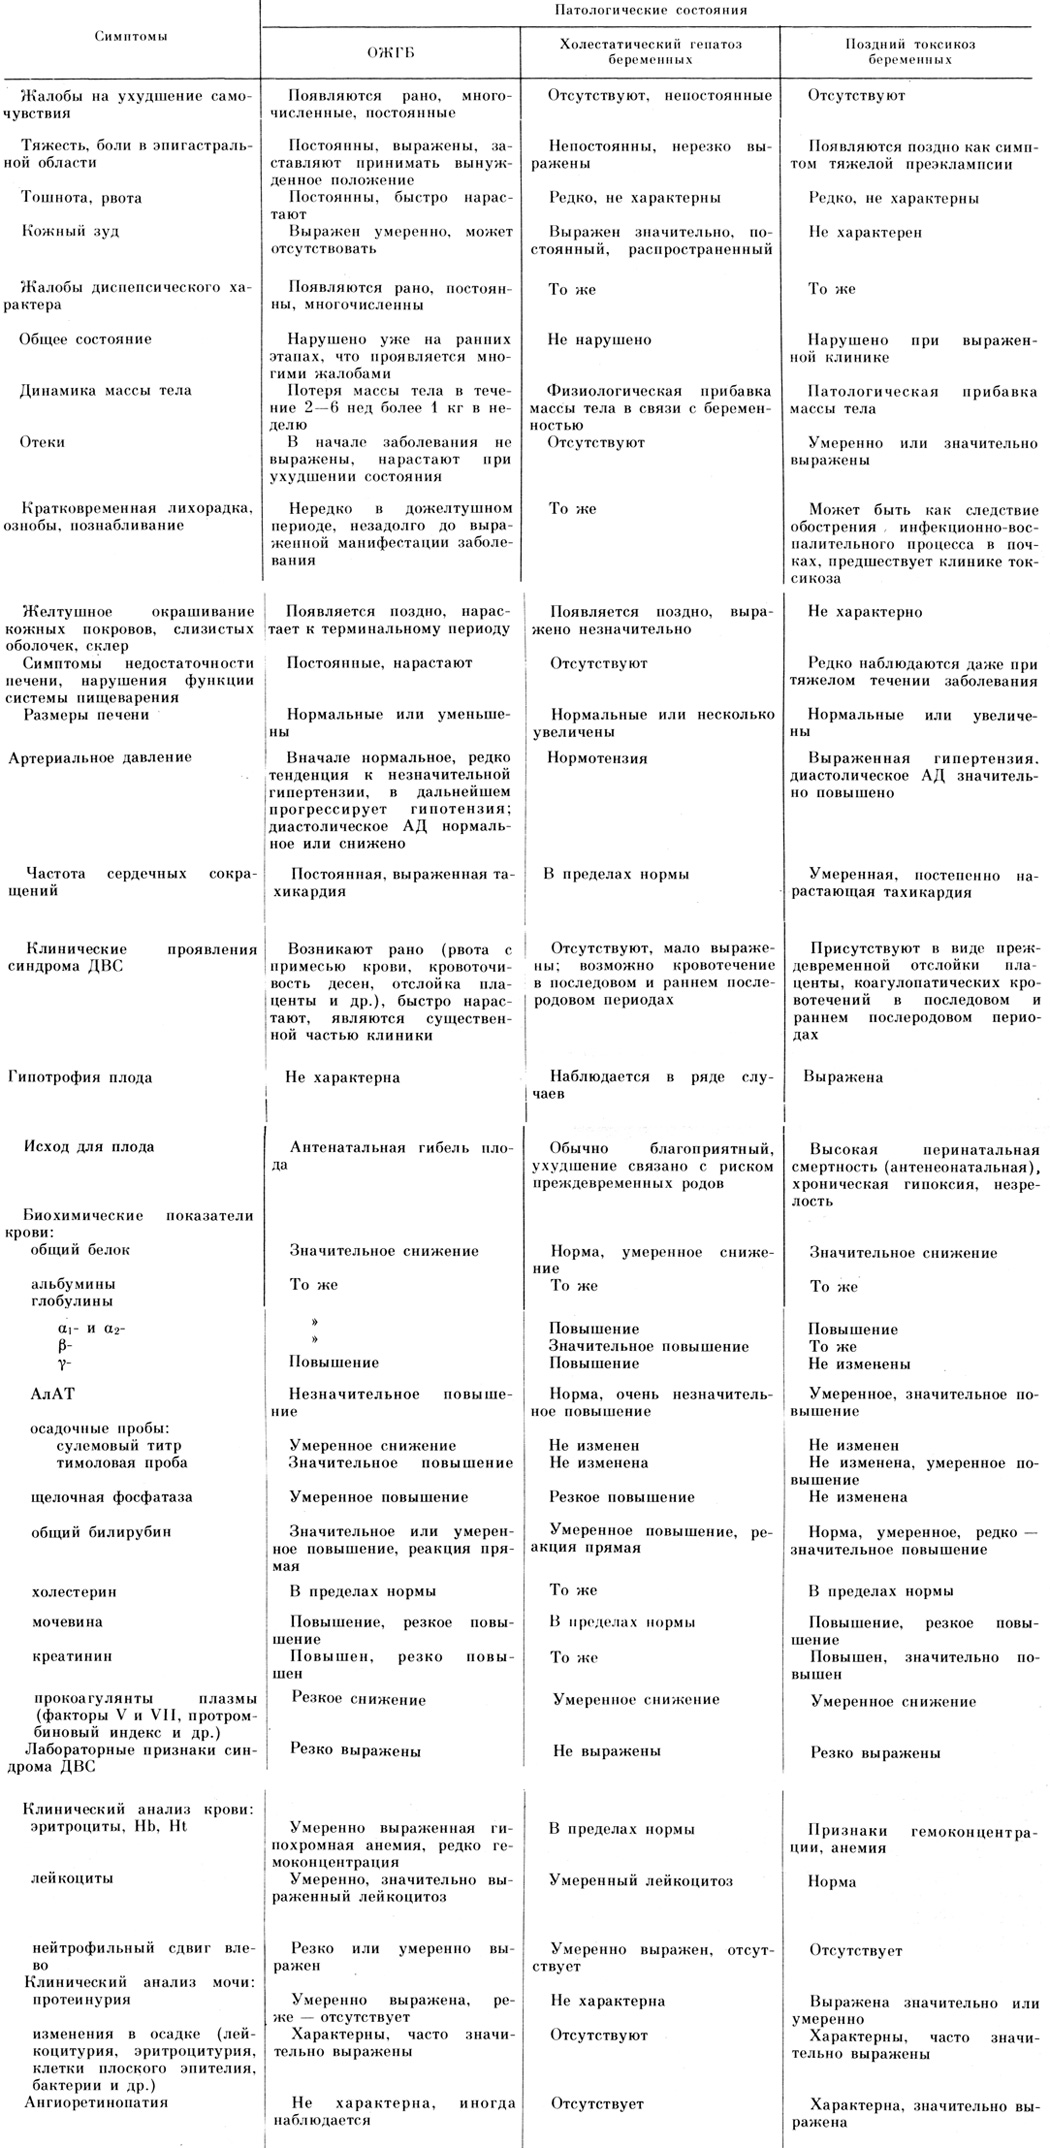 Таблица 20. Дифференциальный диагноз патологии печени, связанной с беременностью